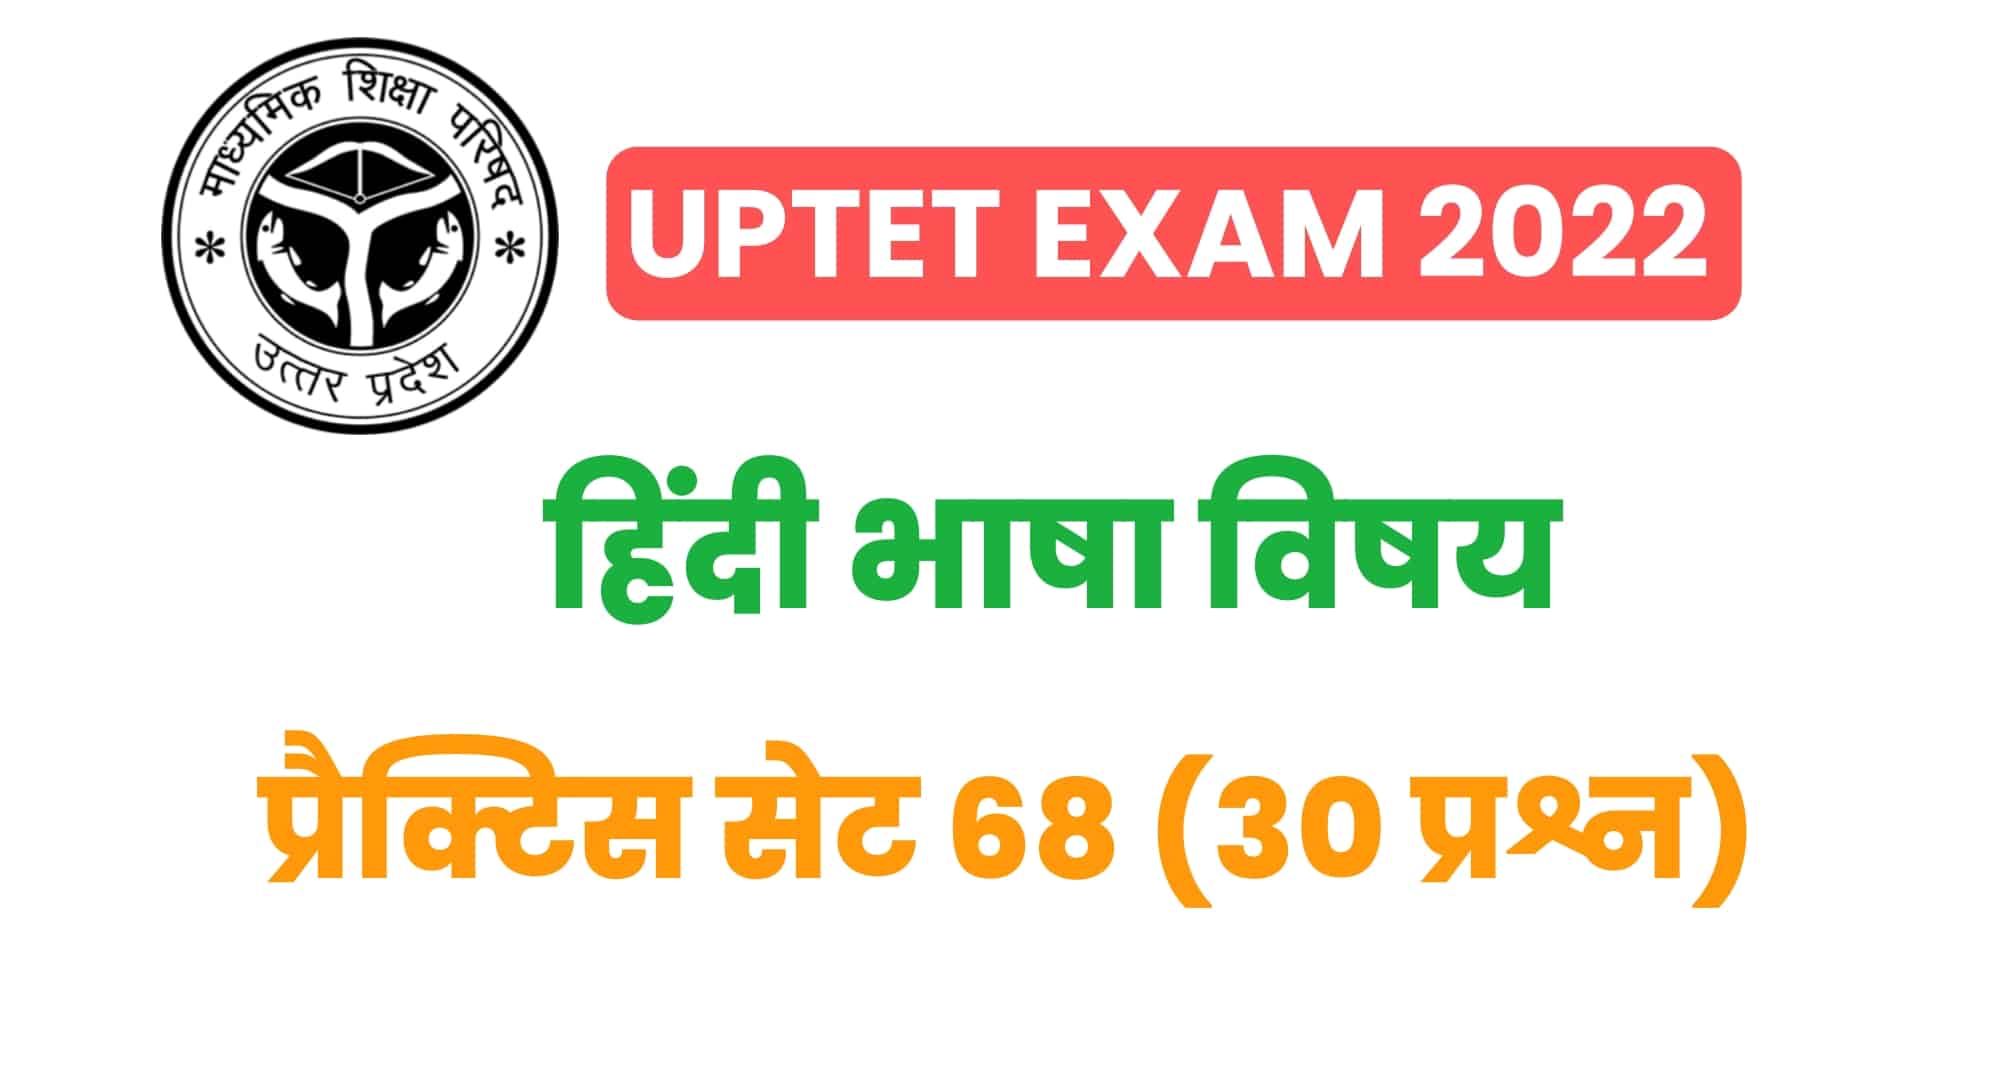 UPTET हिंदी भाषा प्रैक्टिस सेट 68 : परीक्षा में बैठने से पहले पिछले वर्षों के इन 30 महत्वपूर्ण प्रश्नों का अवश्य करें अध्ययन